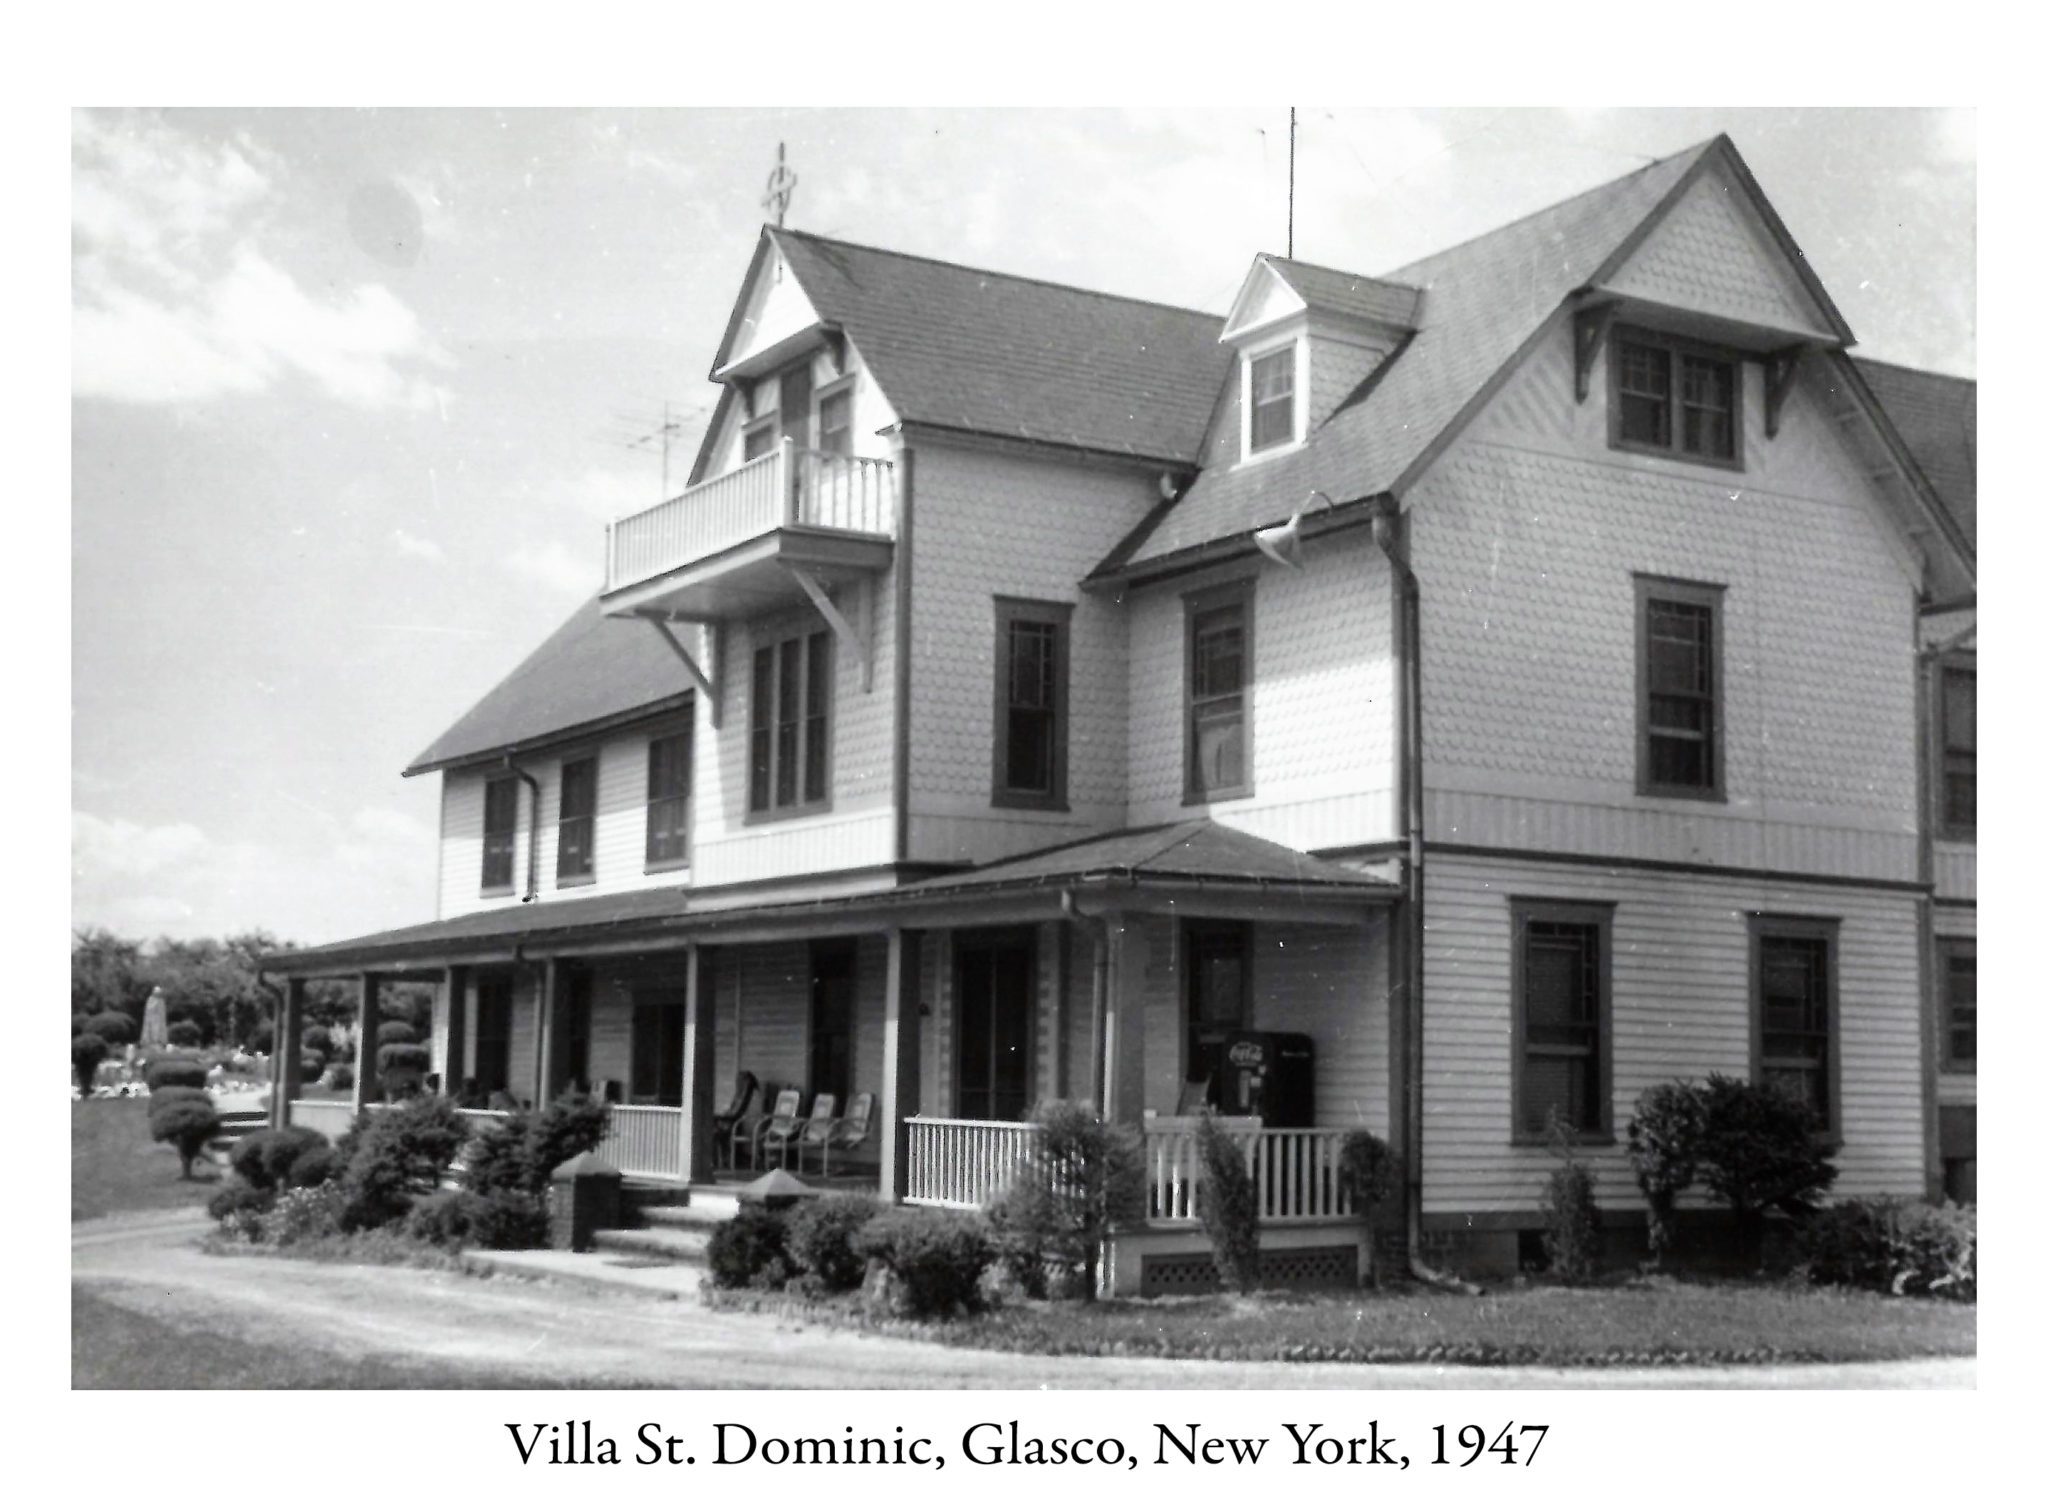 1947 – Villa St. Dominic in Glasco, NY